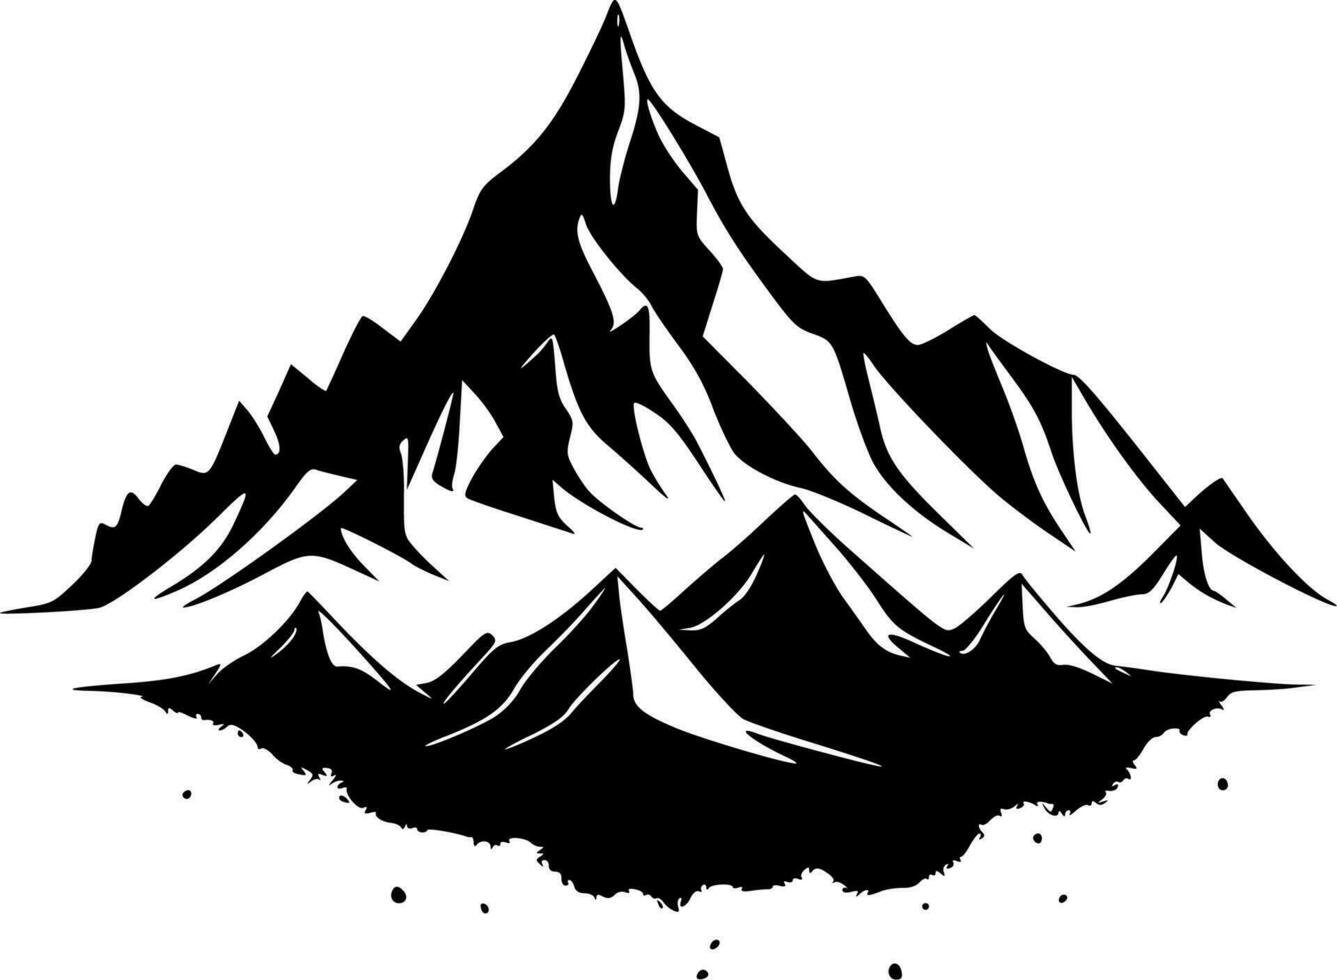 berg - hög kvalitet vektor logotyp - vektor illustration idealisk för t-shirt grafisk